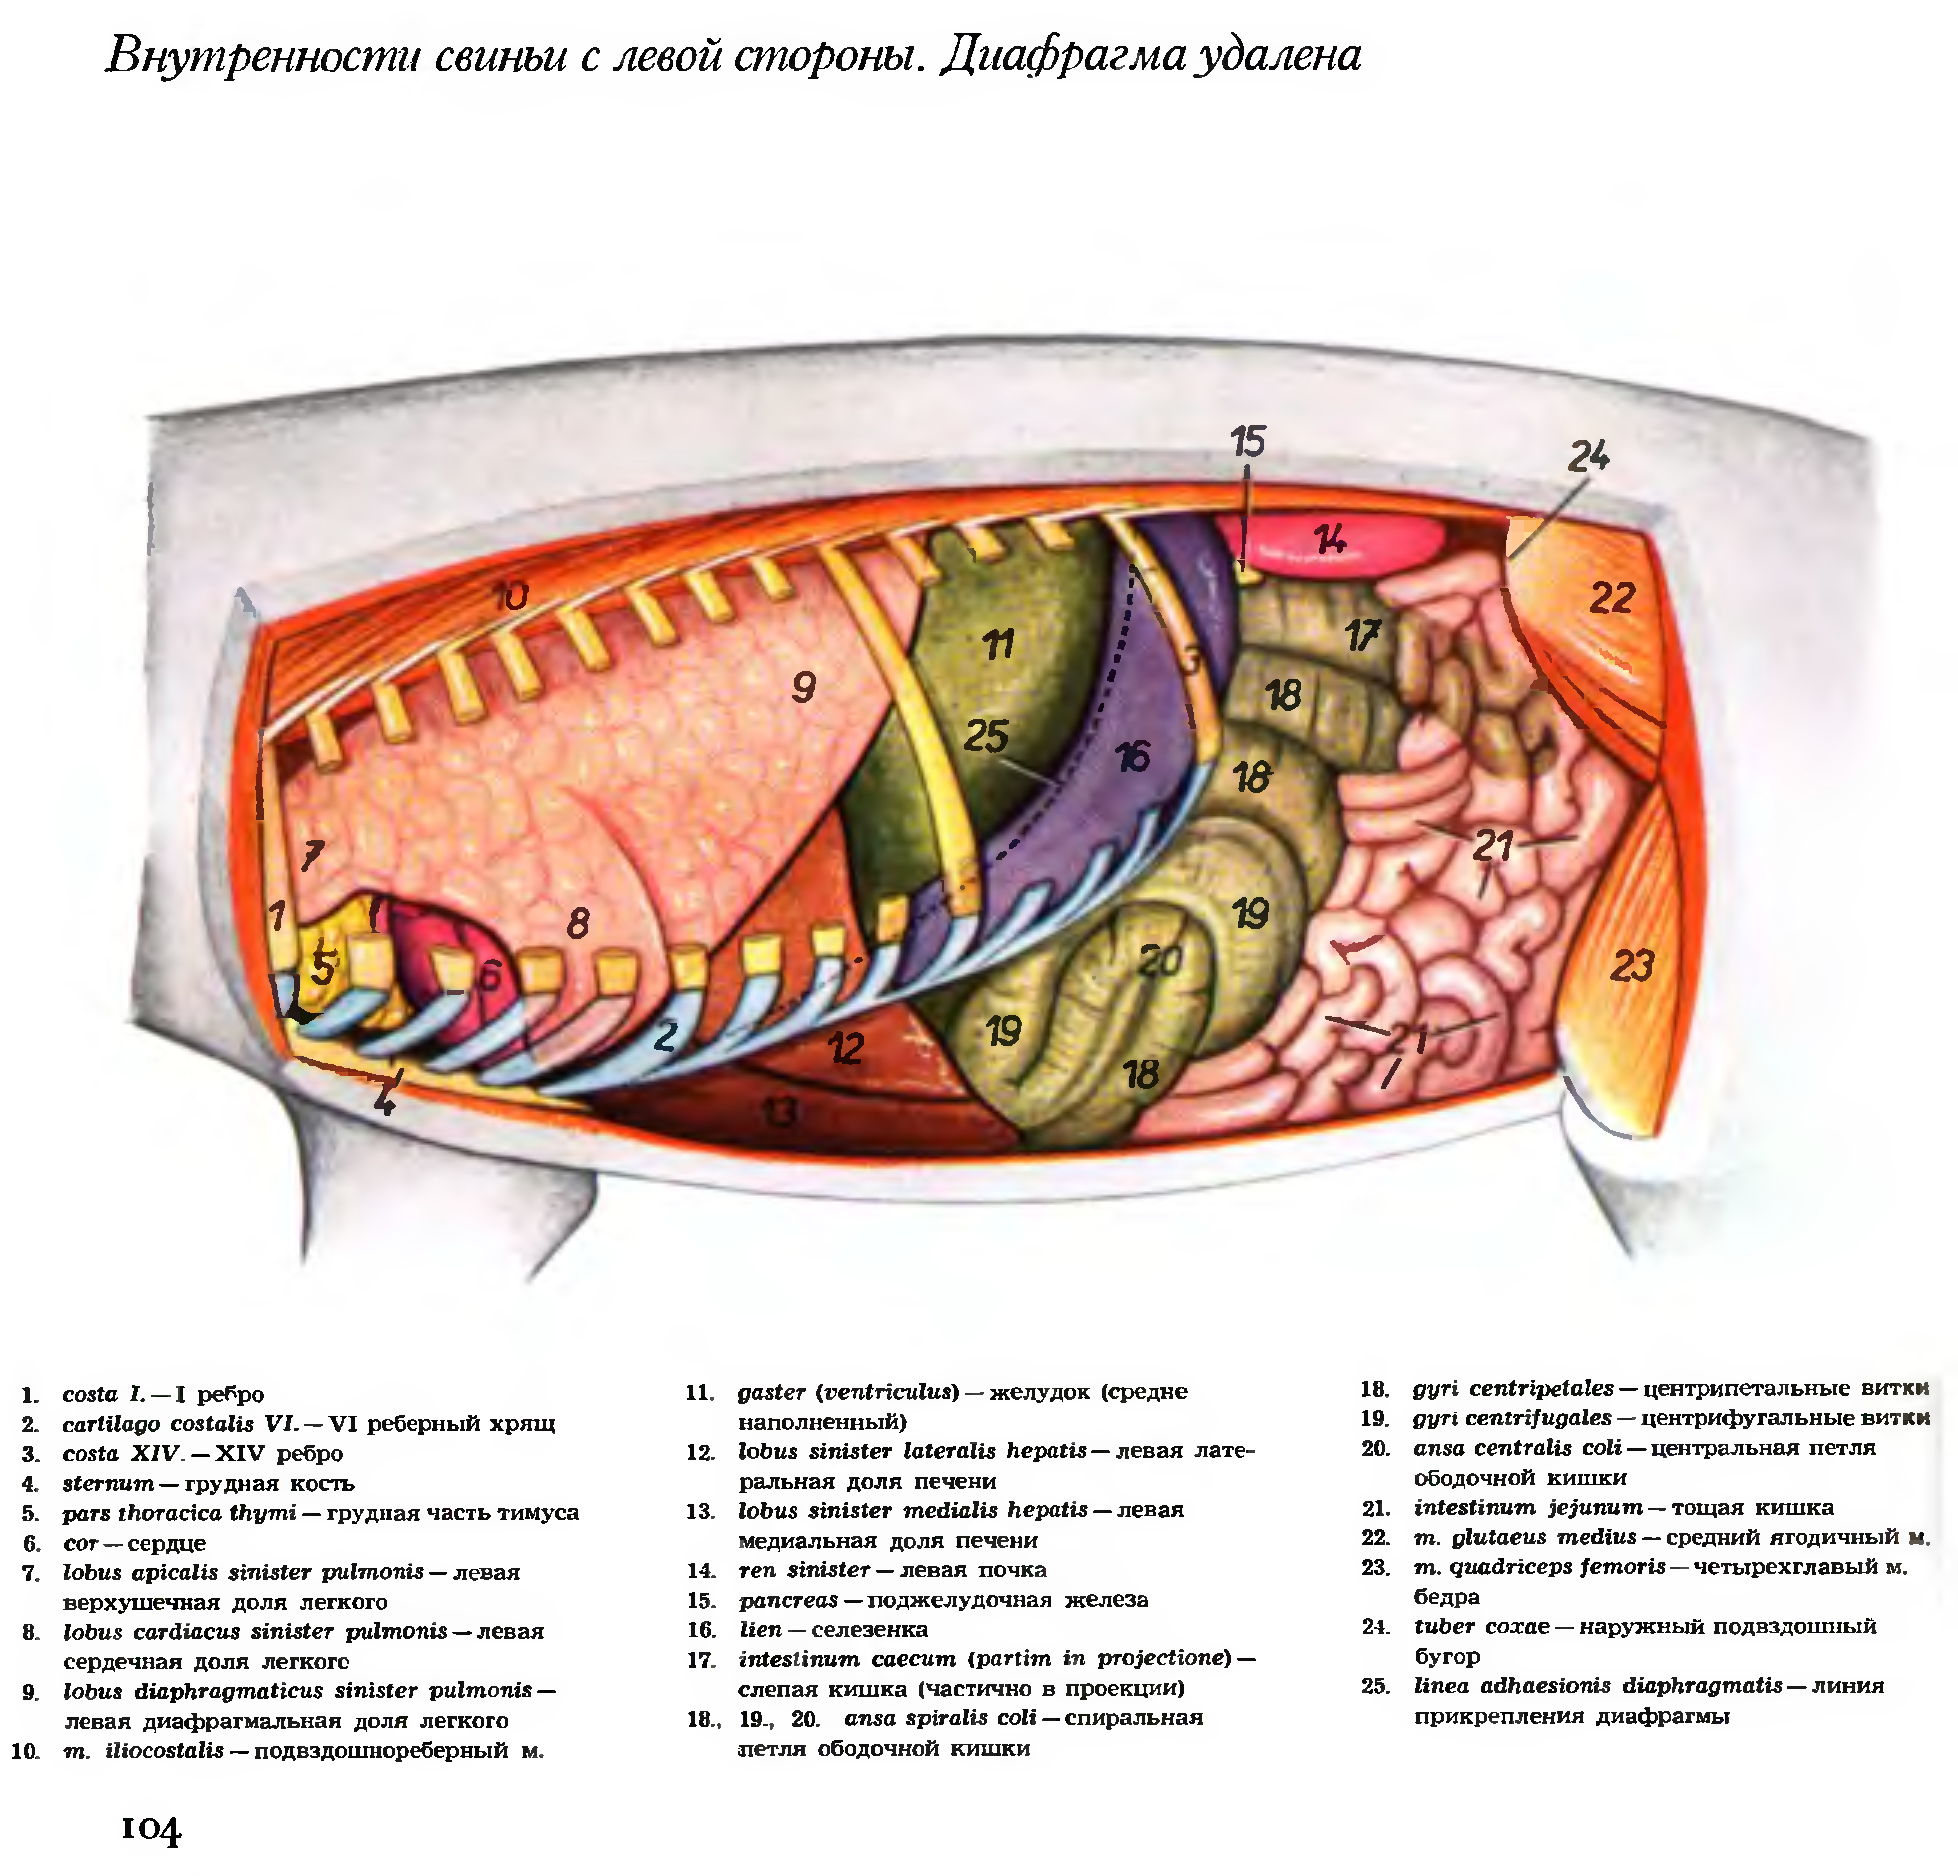 Топография внутренних органов свиньи с левой стороны